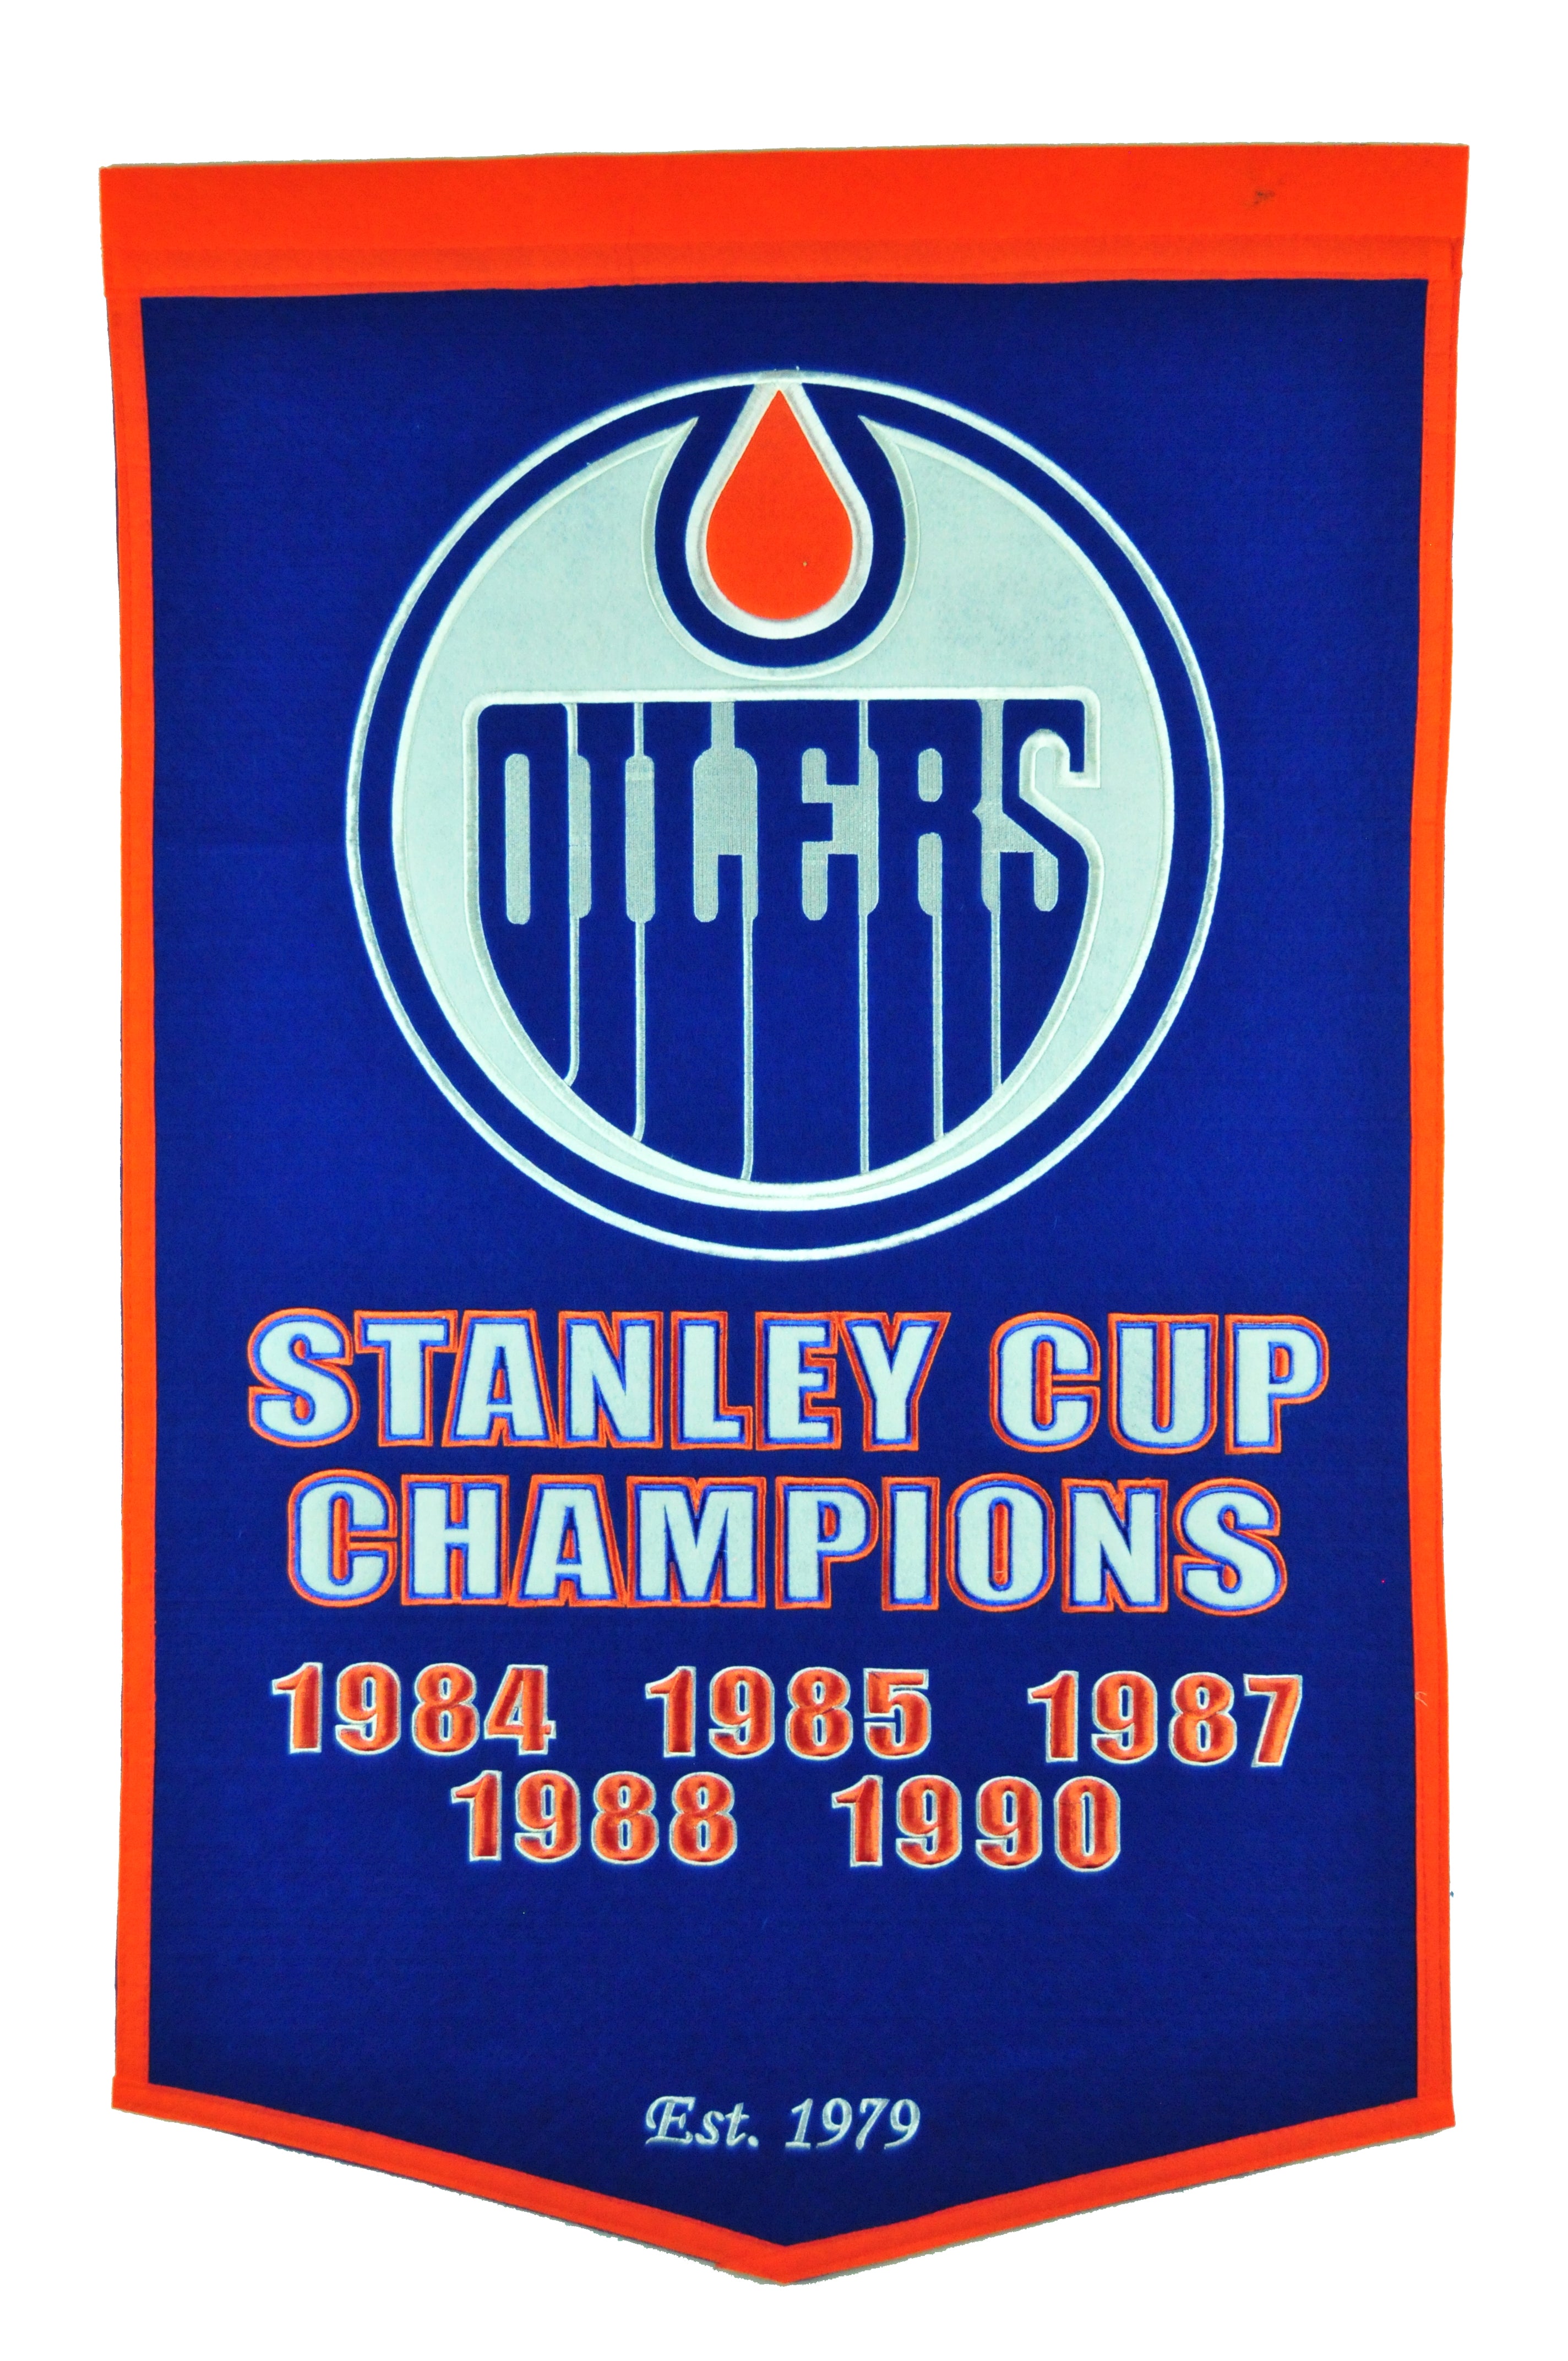 Edmonton Oilers Banner